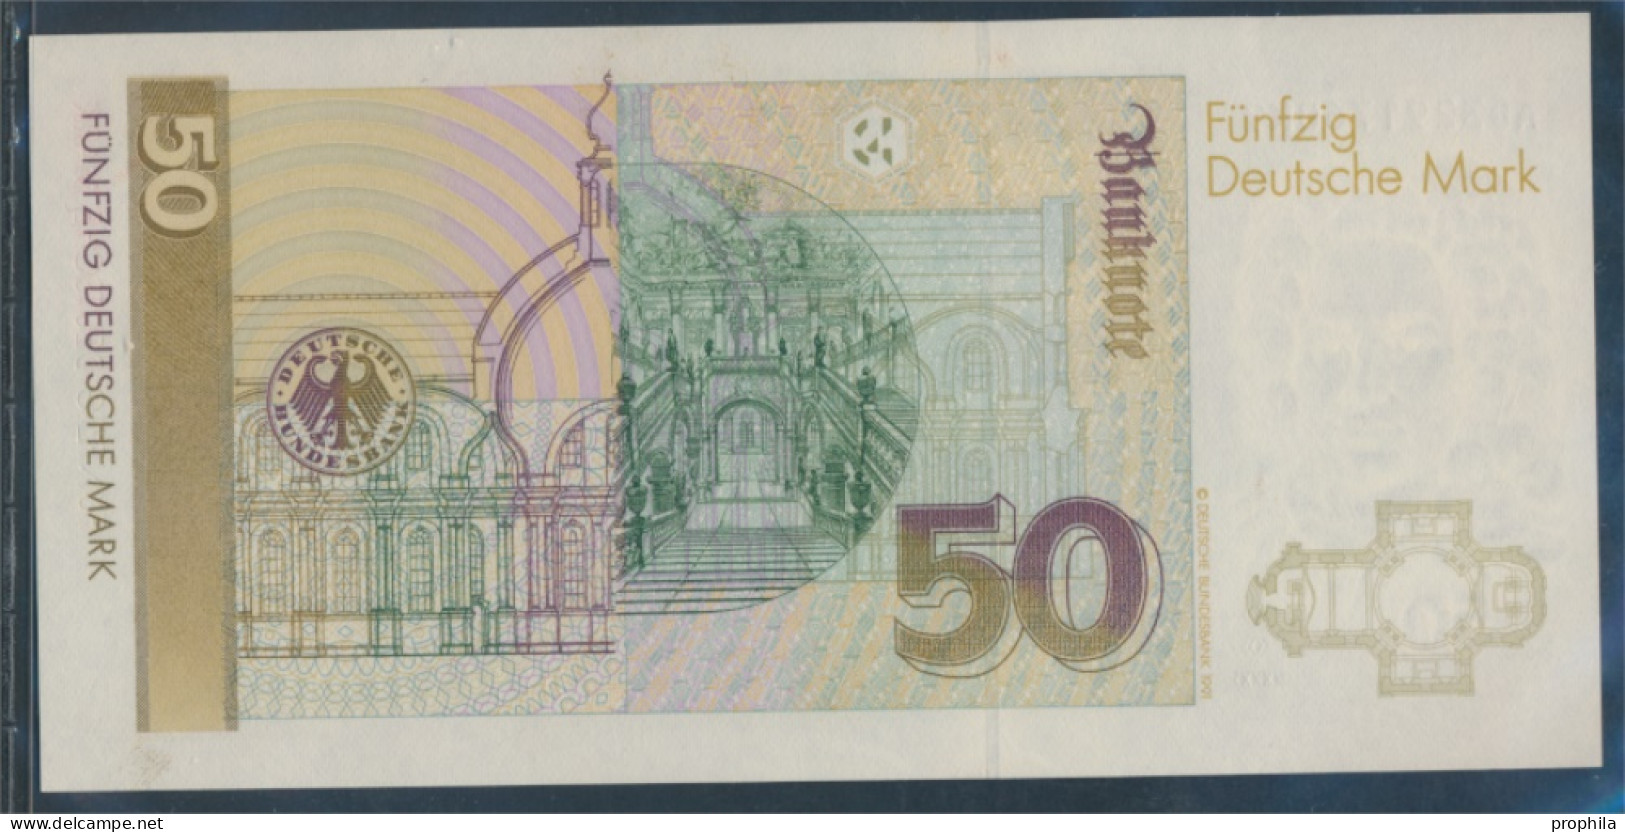 BRD Rosenbg: 293a Serien: AD Bankfrisch 1989 50 Deutsche Mark (10288331 - 50 Deutsche Mark